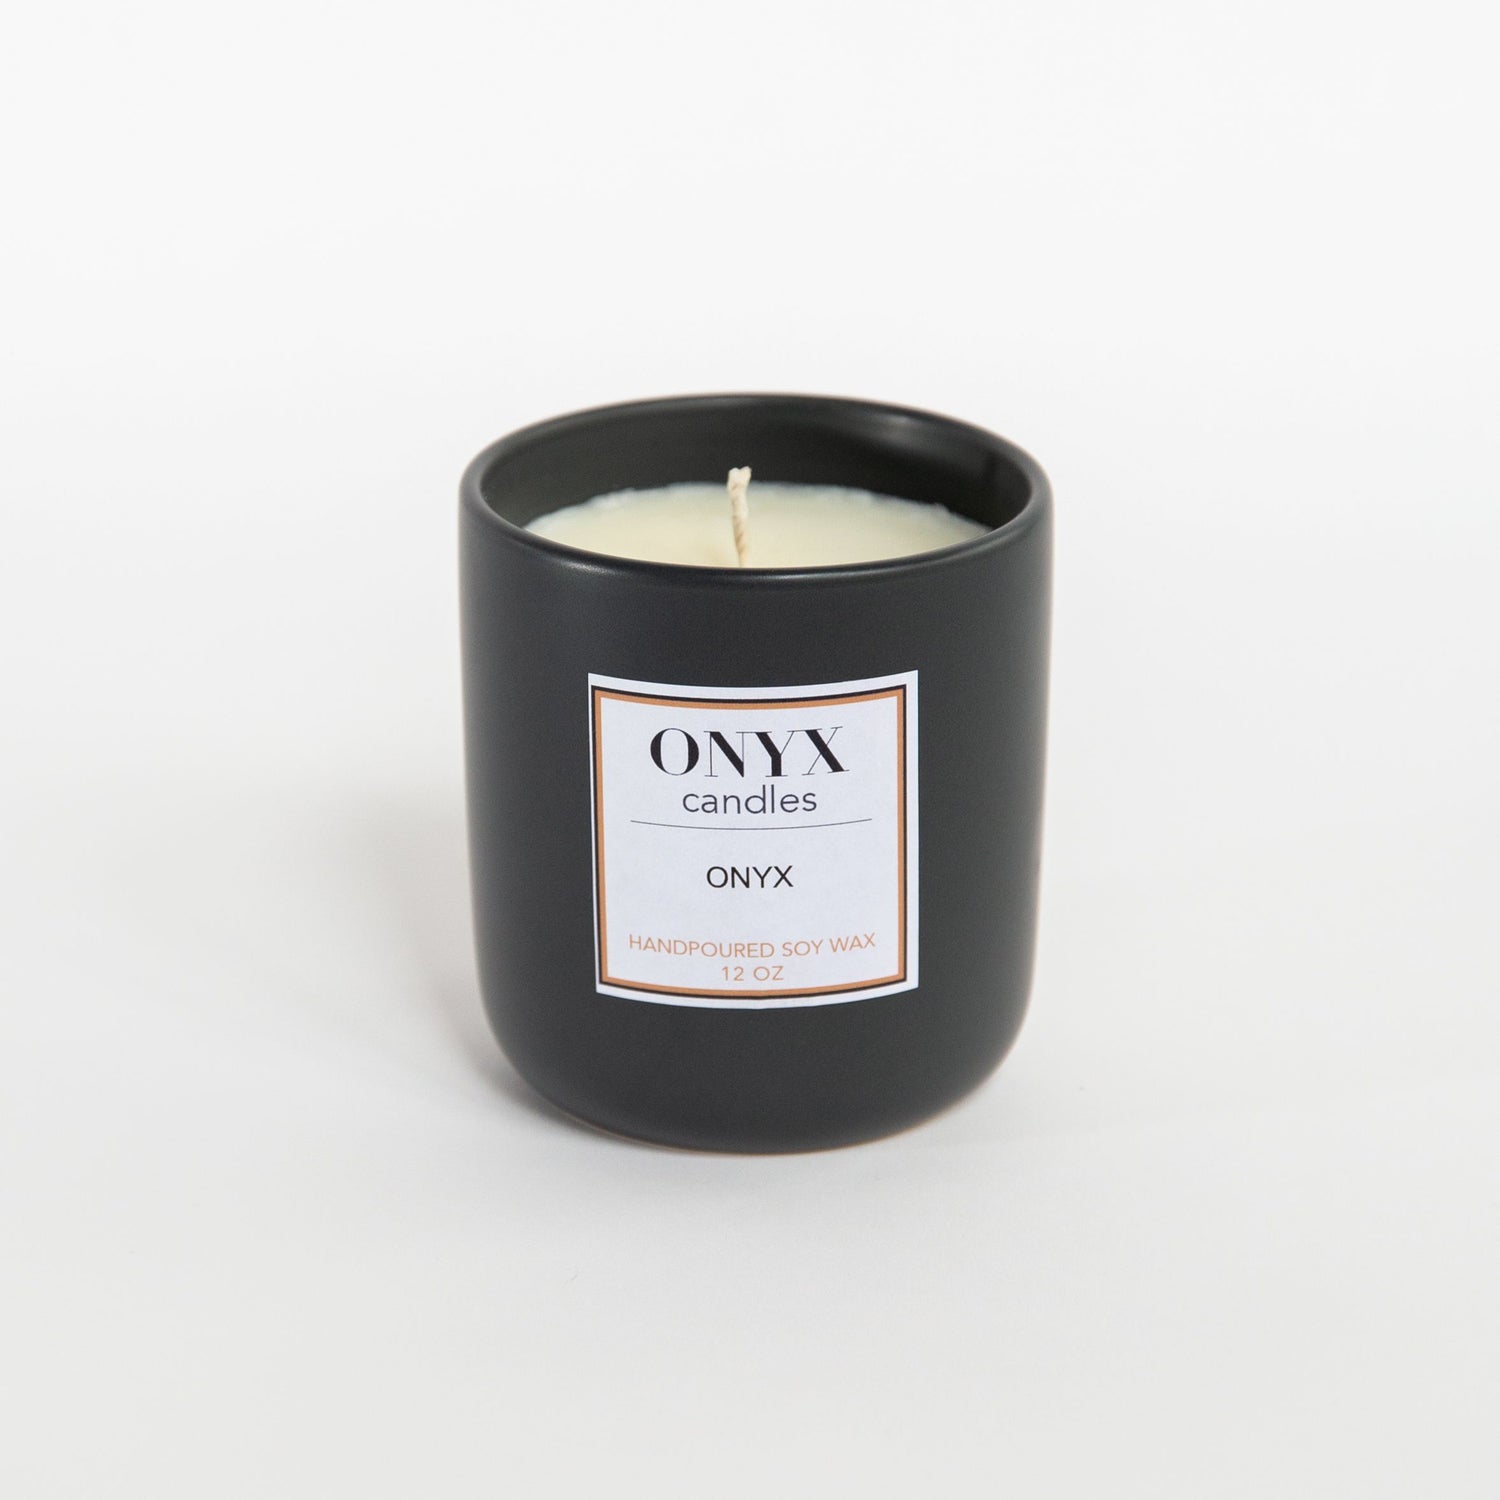 12oz matte black ceramic jar in Onyx signature scent